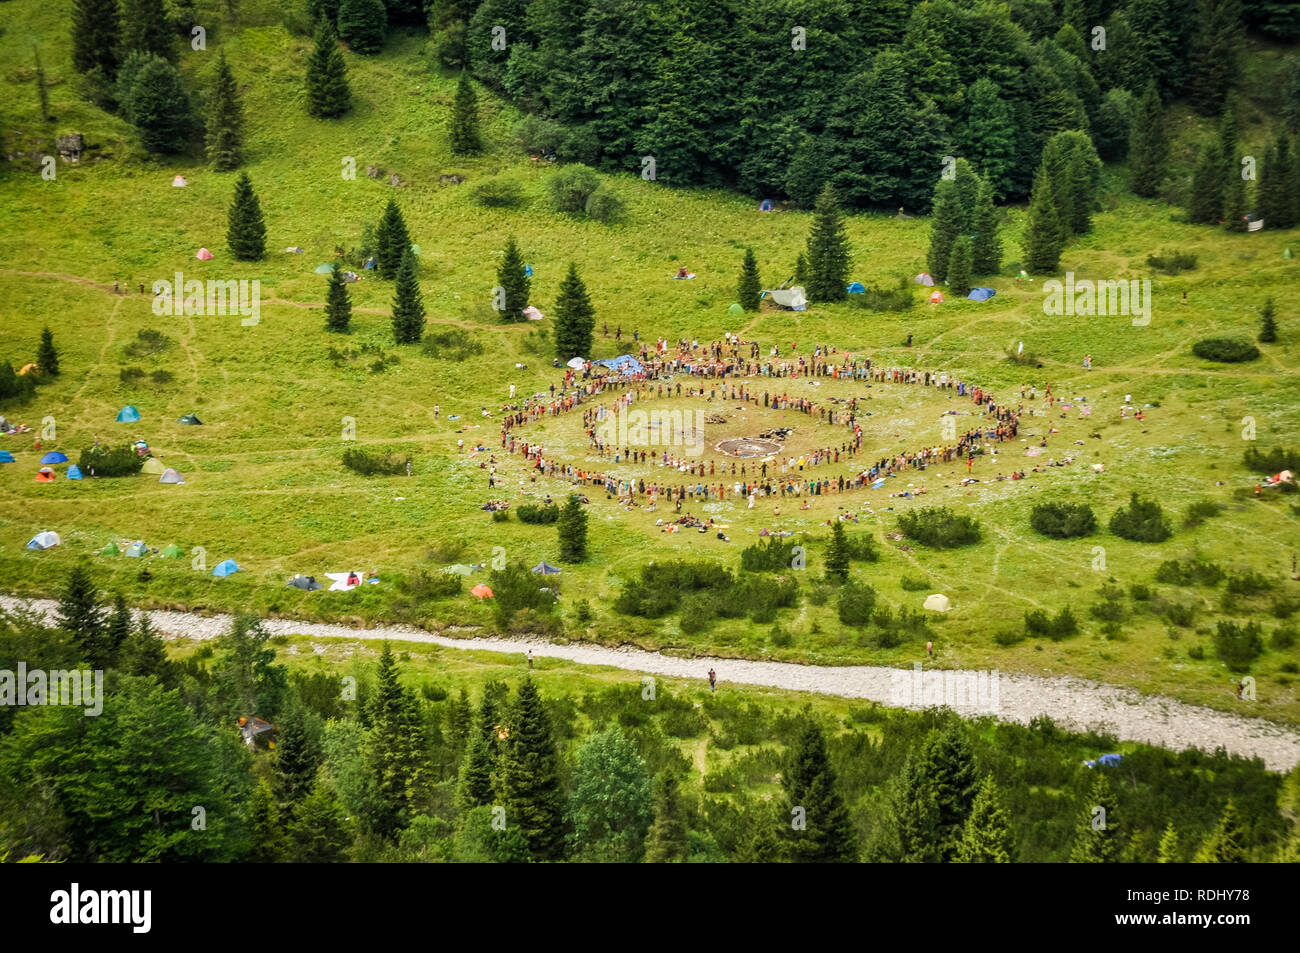 La gente de pie en círculos durante el festival en la naturaleza. Foto de stock